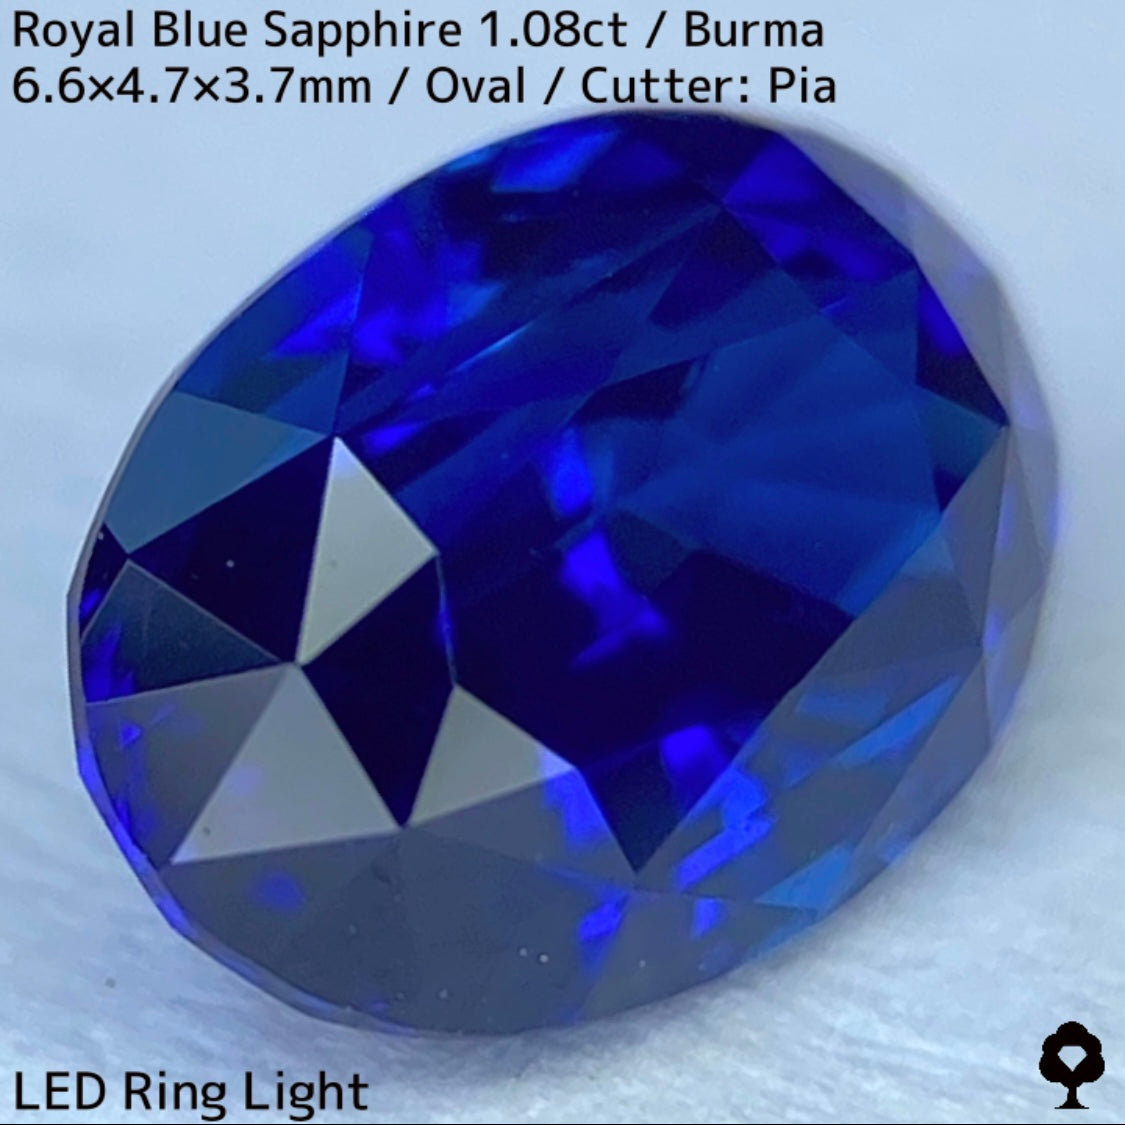 ビルマ産ロイヤルブルーサファイア1.08ct★濃厚だけど暗くない最高の色合いの1ctアップ美結晶ロイヤル